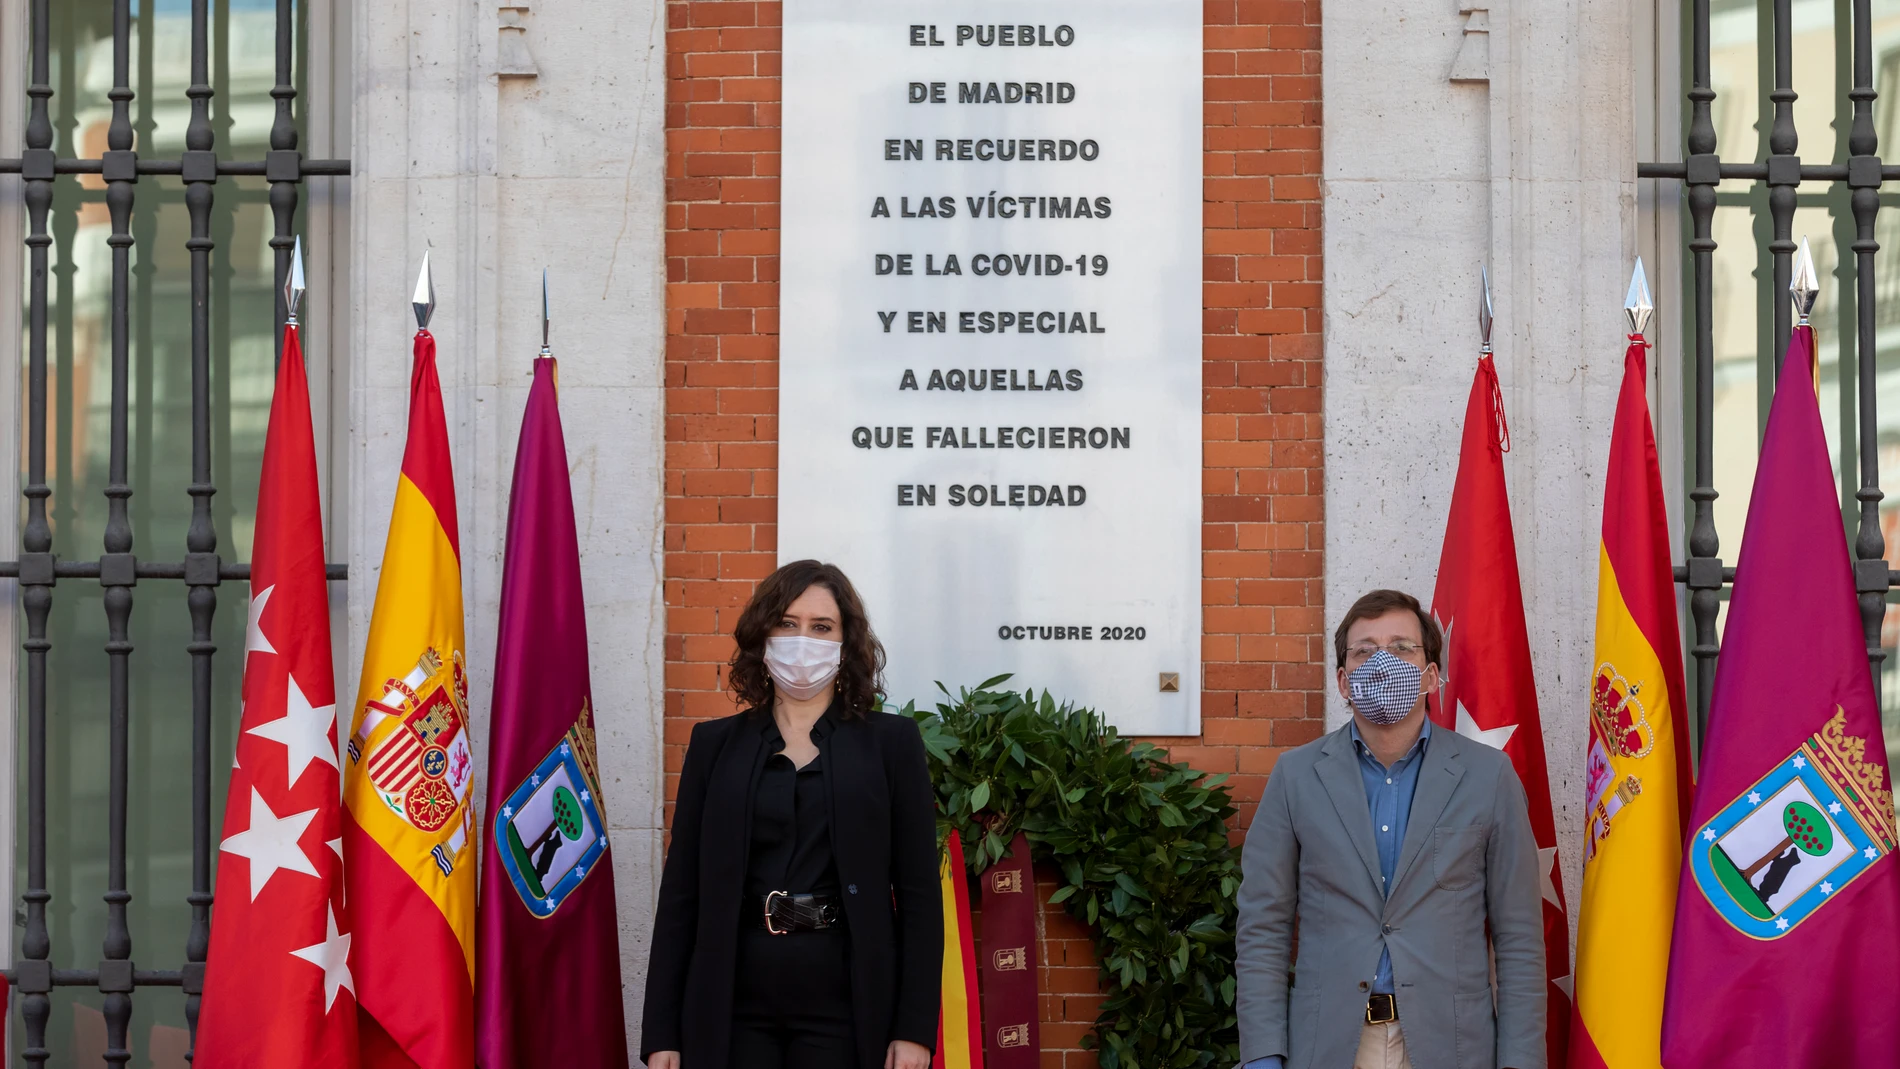 Isabel Díaz Ayuso acompañada de los miembros de su gobierno, y parte de la corporación municipal del ayuntamiento de Madrid participan en un homenaje a las víctimas de la Covid-19 en la Real Casa de Correos